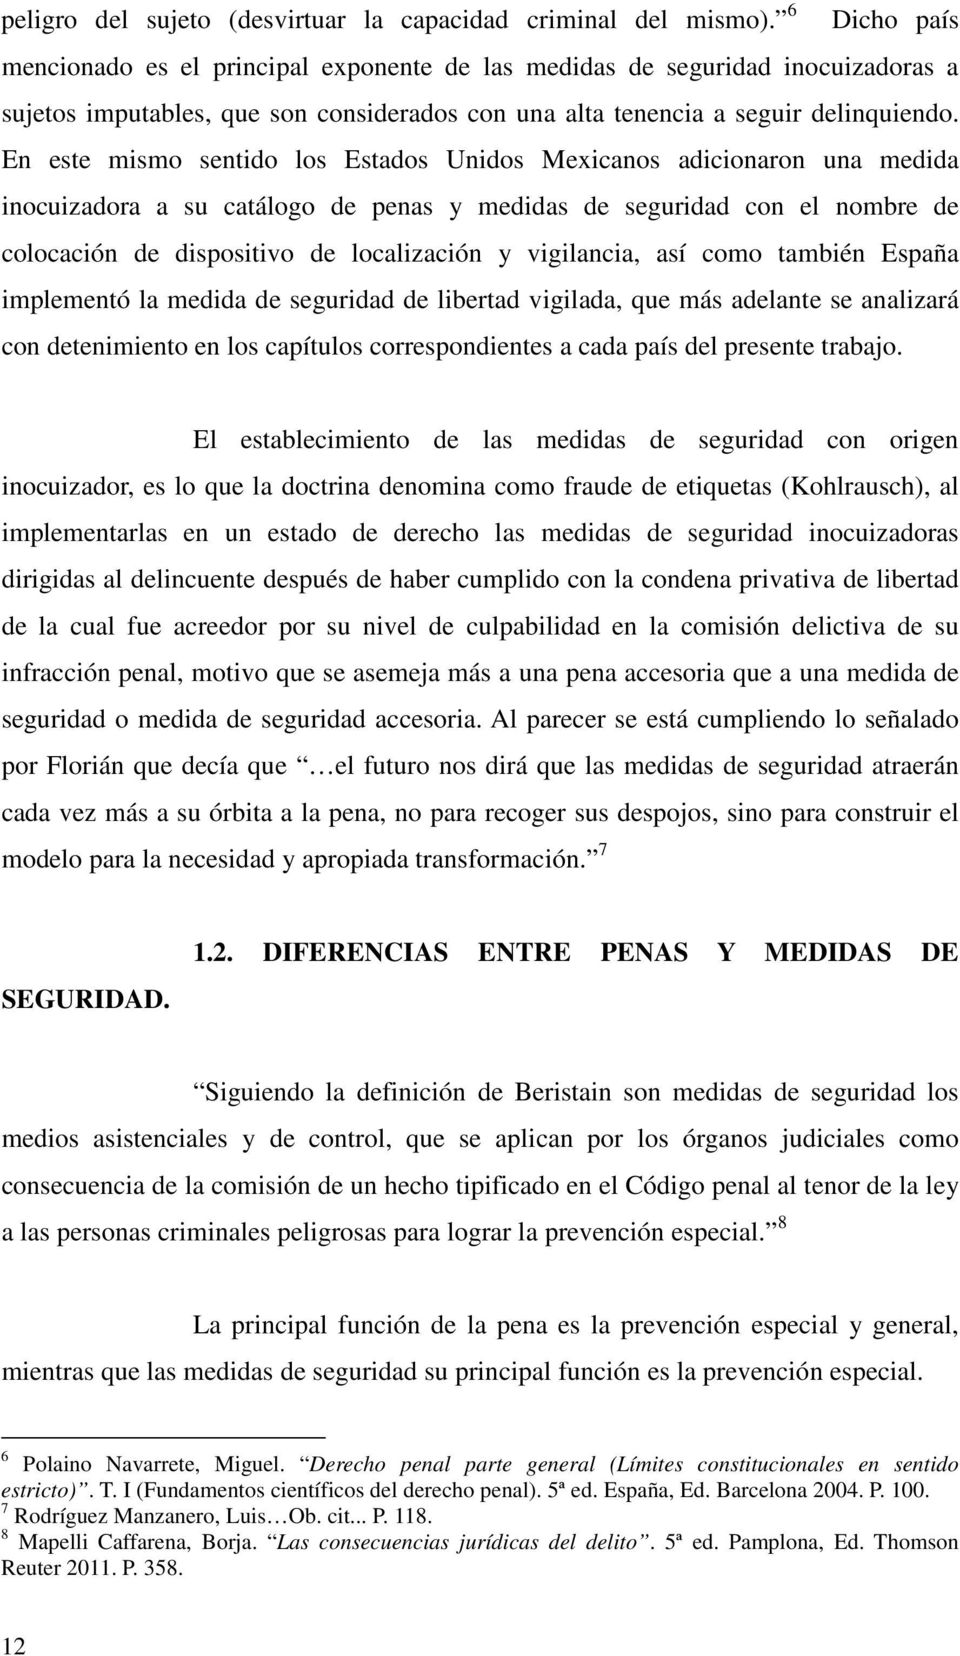 En este mismo sentido los Estados Unidos Mexicanos adicionaron una medida inocuizadora a su catálogo de penas y medidas de seguridad con el nombre de colocación de dispositivo de localización y